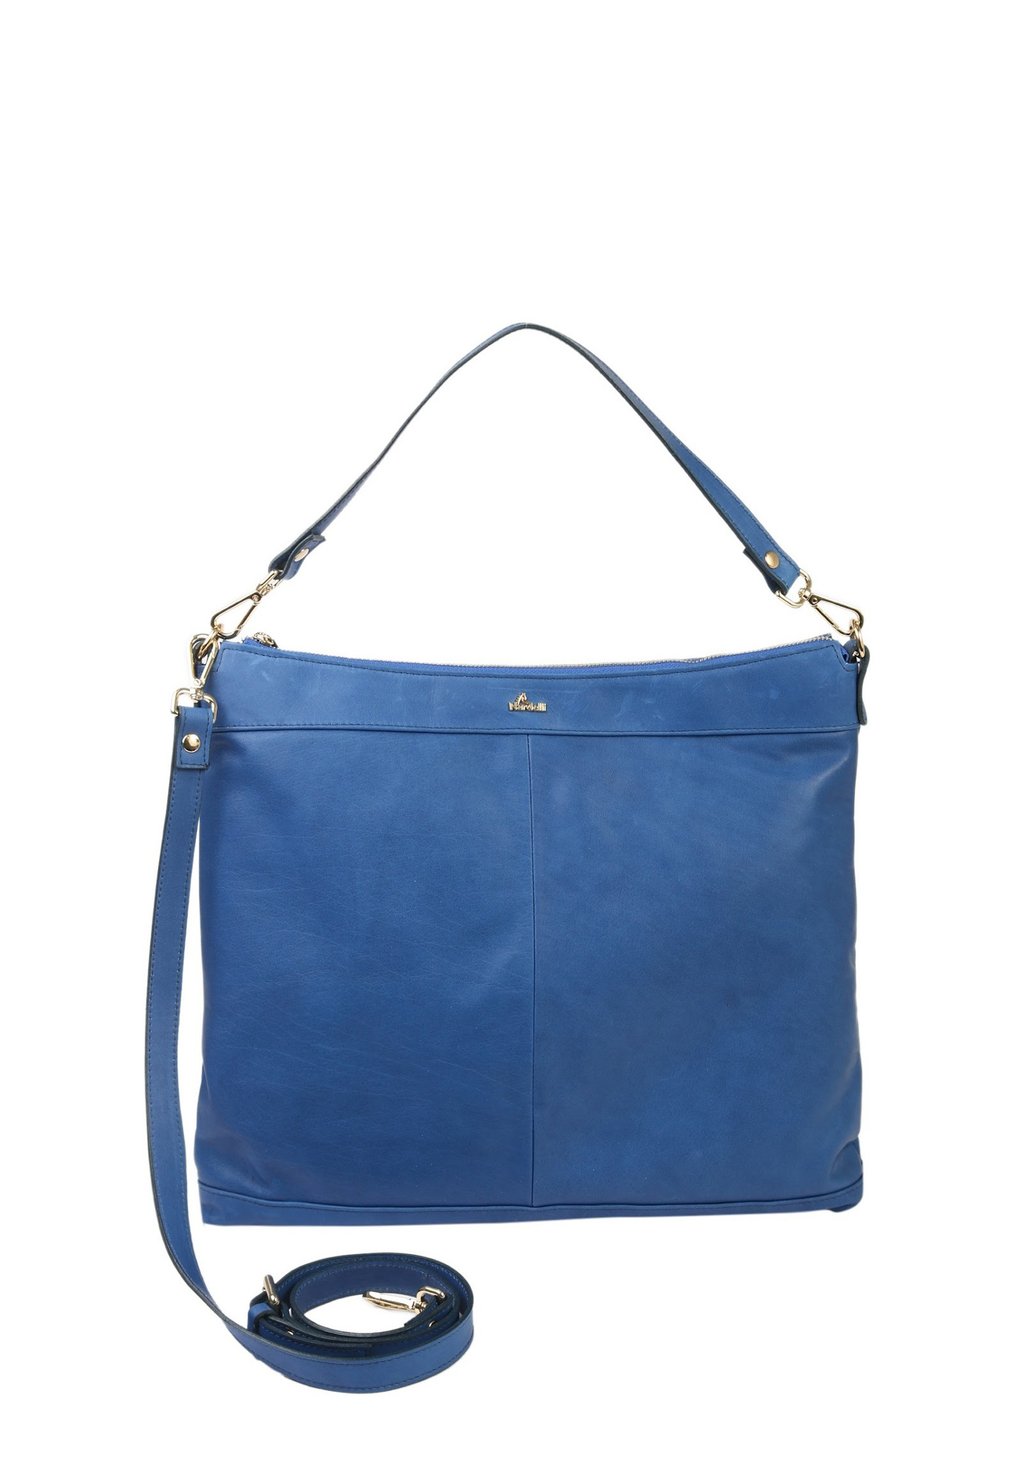 Ручная сумка Nardelli, васильковый цвет цена и фото